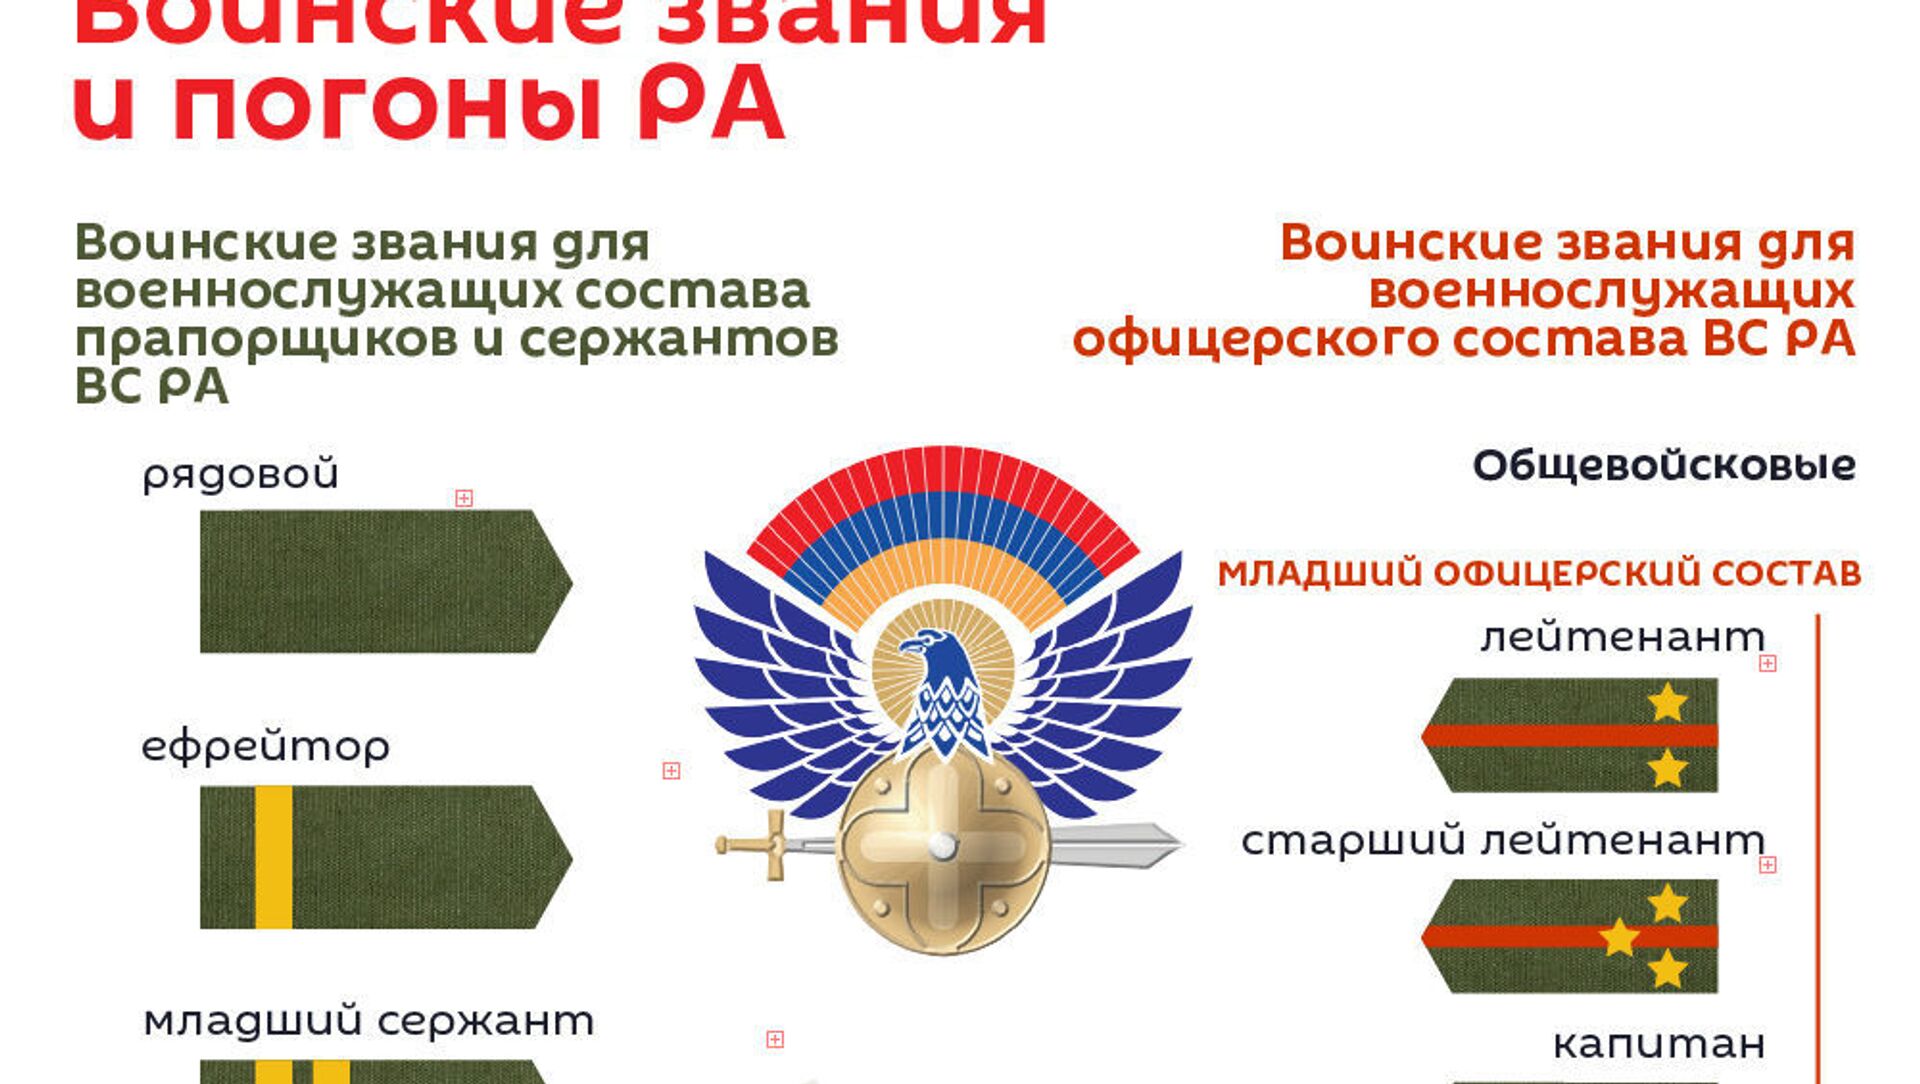 Воинские звания и знаки различия в Вооружённых силах Российской Федерации — Википедия